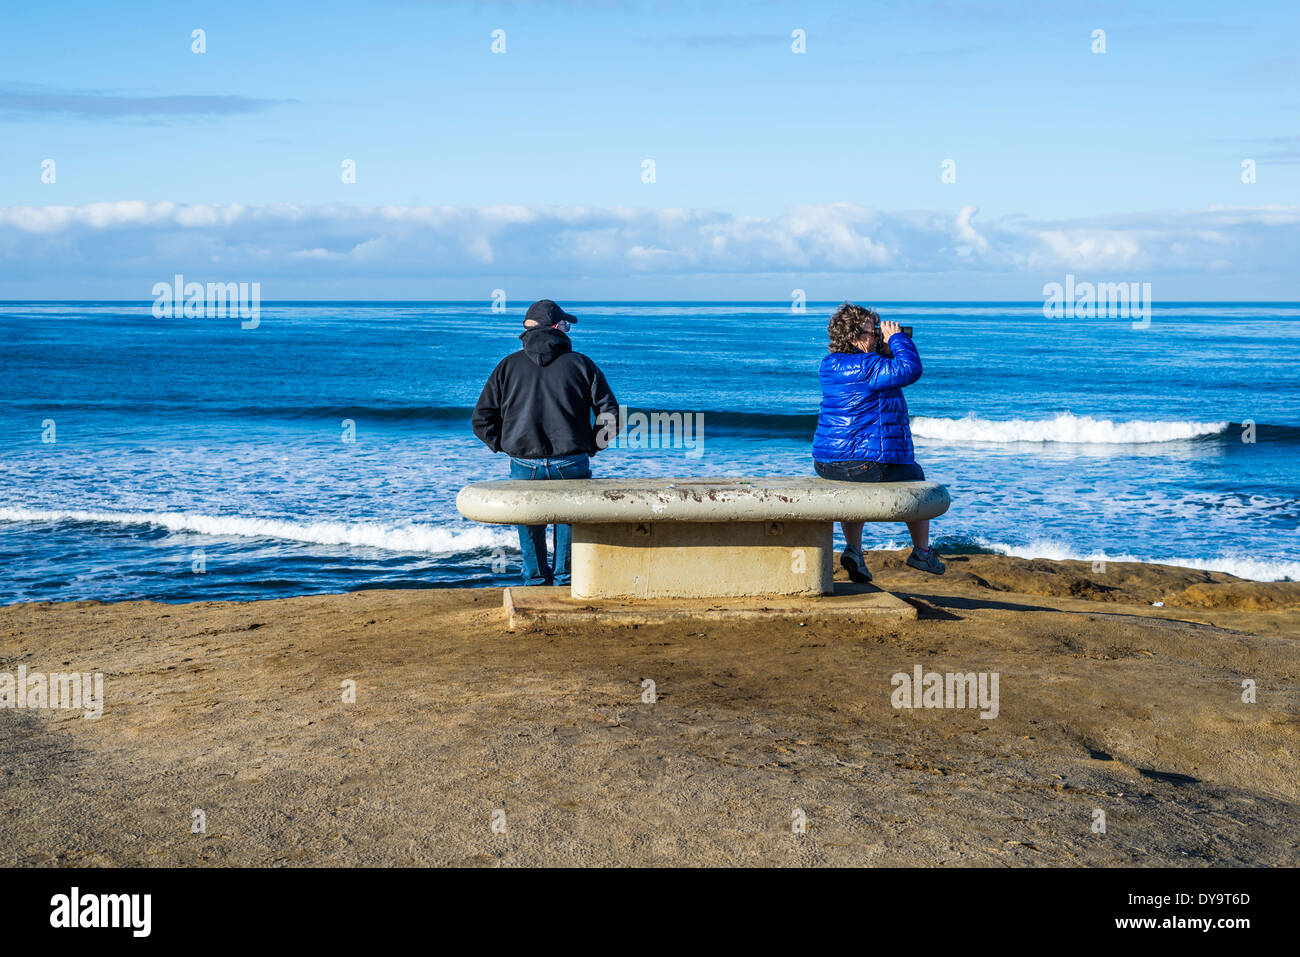 Deux personnes assises sur un banc à l'Luscomb. région de la Pointe Sunset Cliffs Natural Park, San Diego, California, United States. Banque D'Images